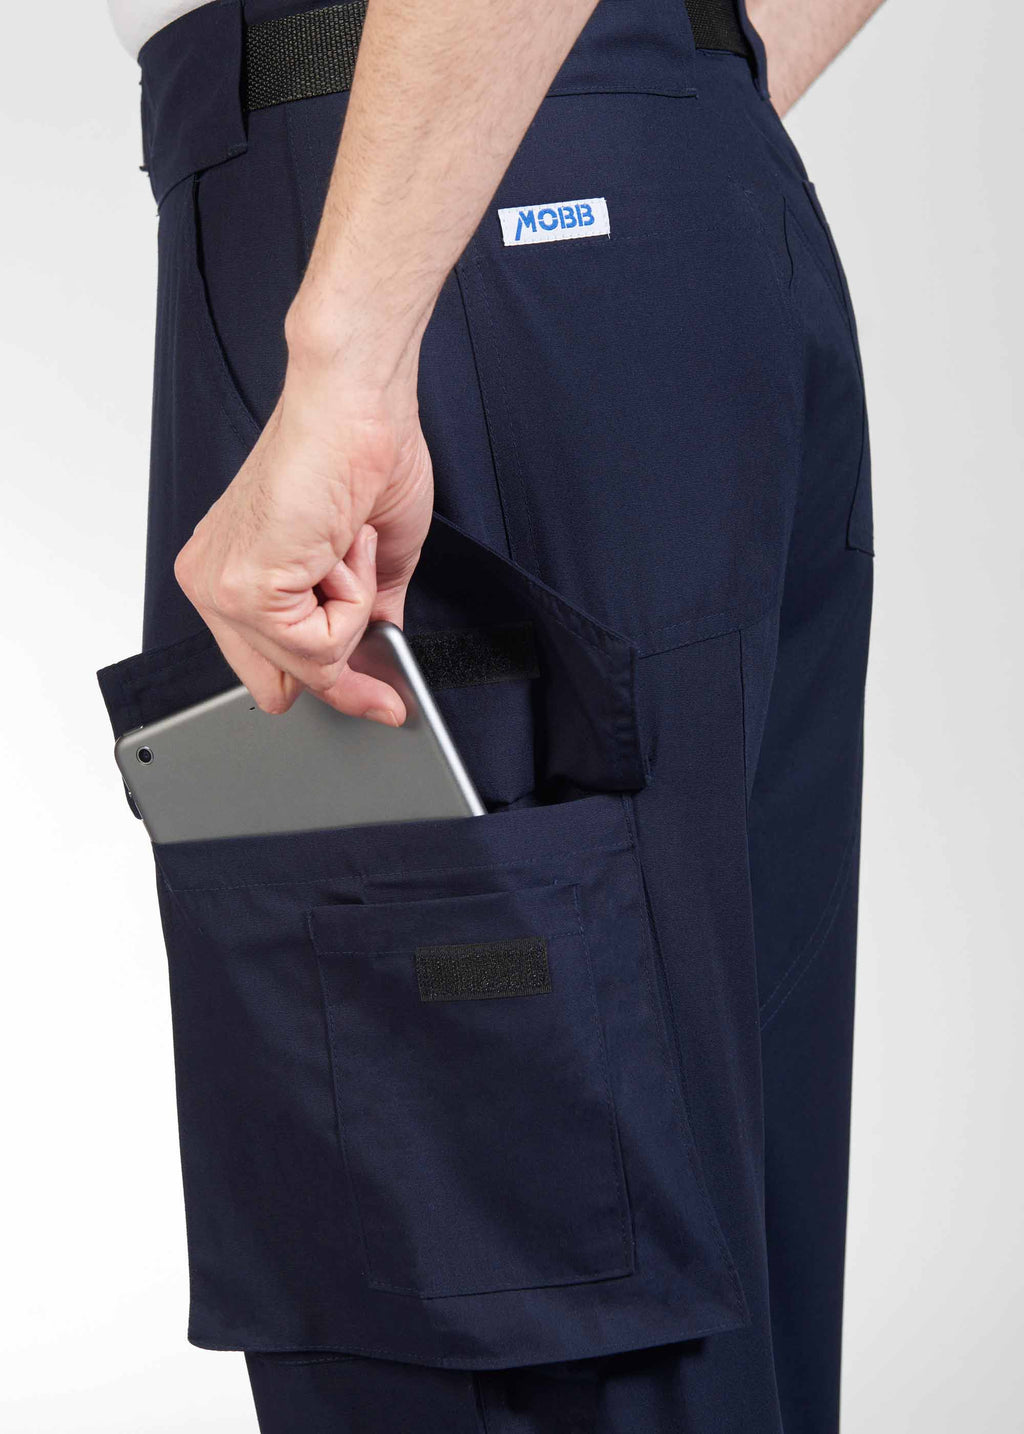 Product - MOBB Unisex Six Pocket Cargo Pant